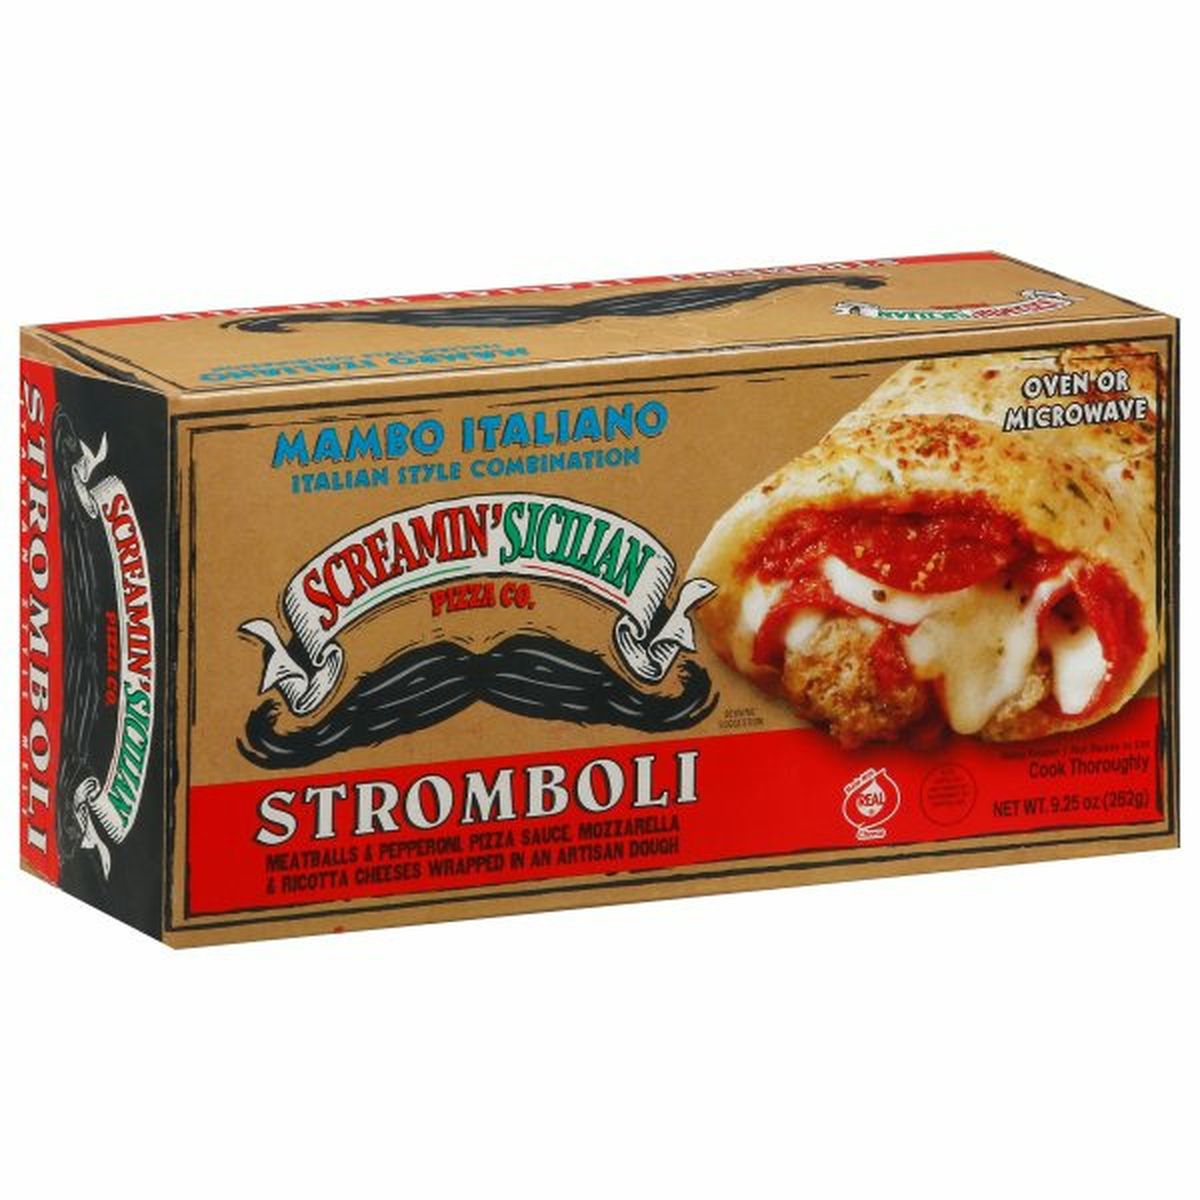 Calories in Screamin' Sicilian Stromboli, Mambo Italiano